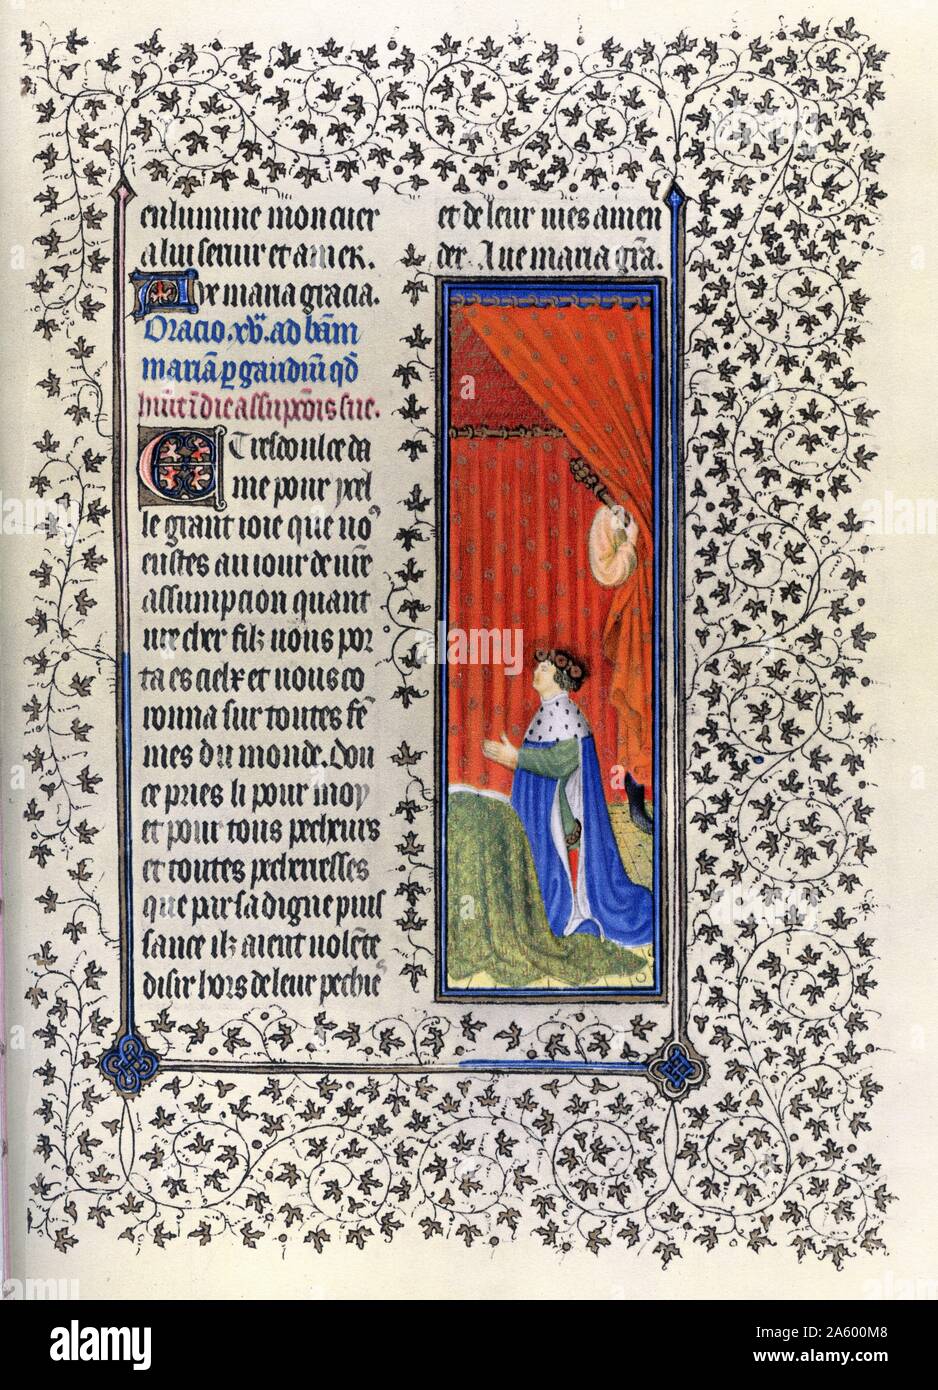 Beleuchtung mit Duc de Berry im Gebet vom Belles Heures des Jean de France, Duc de Berry (schöne Stunden) eine frühe 15. Jahrhundert beleuchtet Manuskript-Buch von Stunden. Vom 15. Jahrhundert Stockfoto